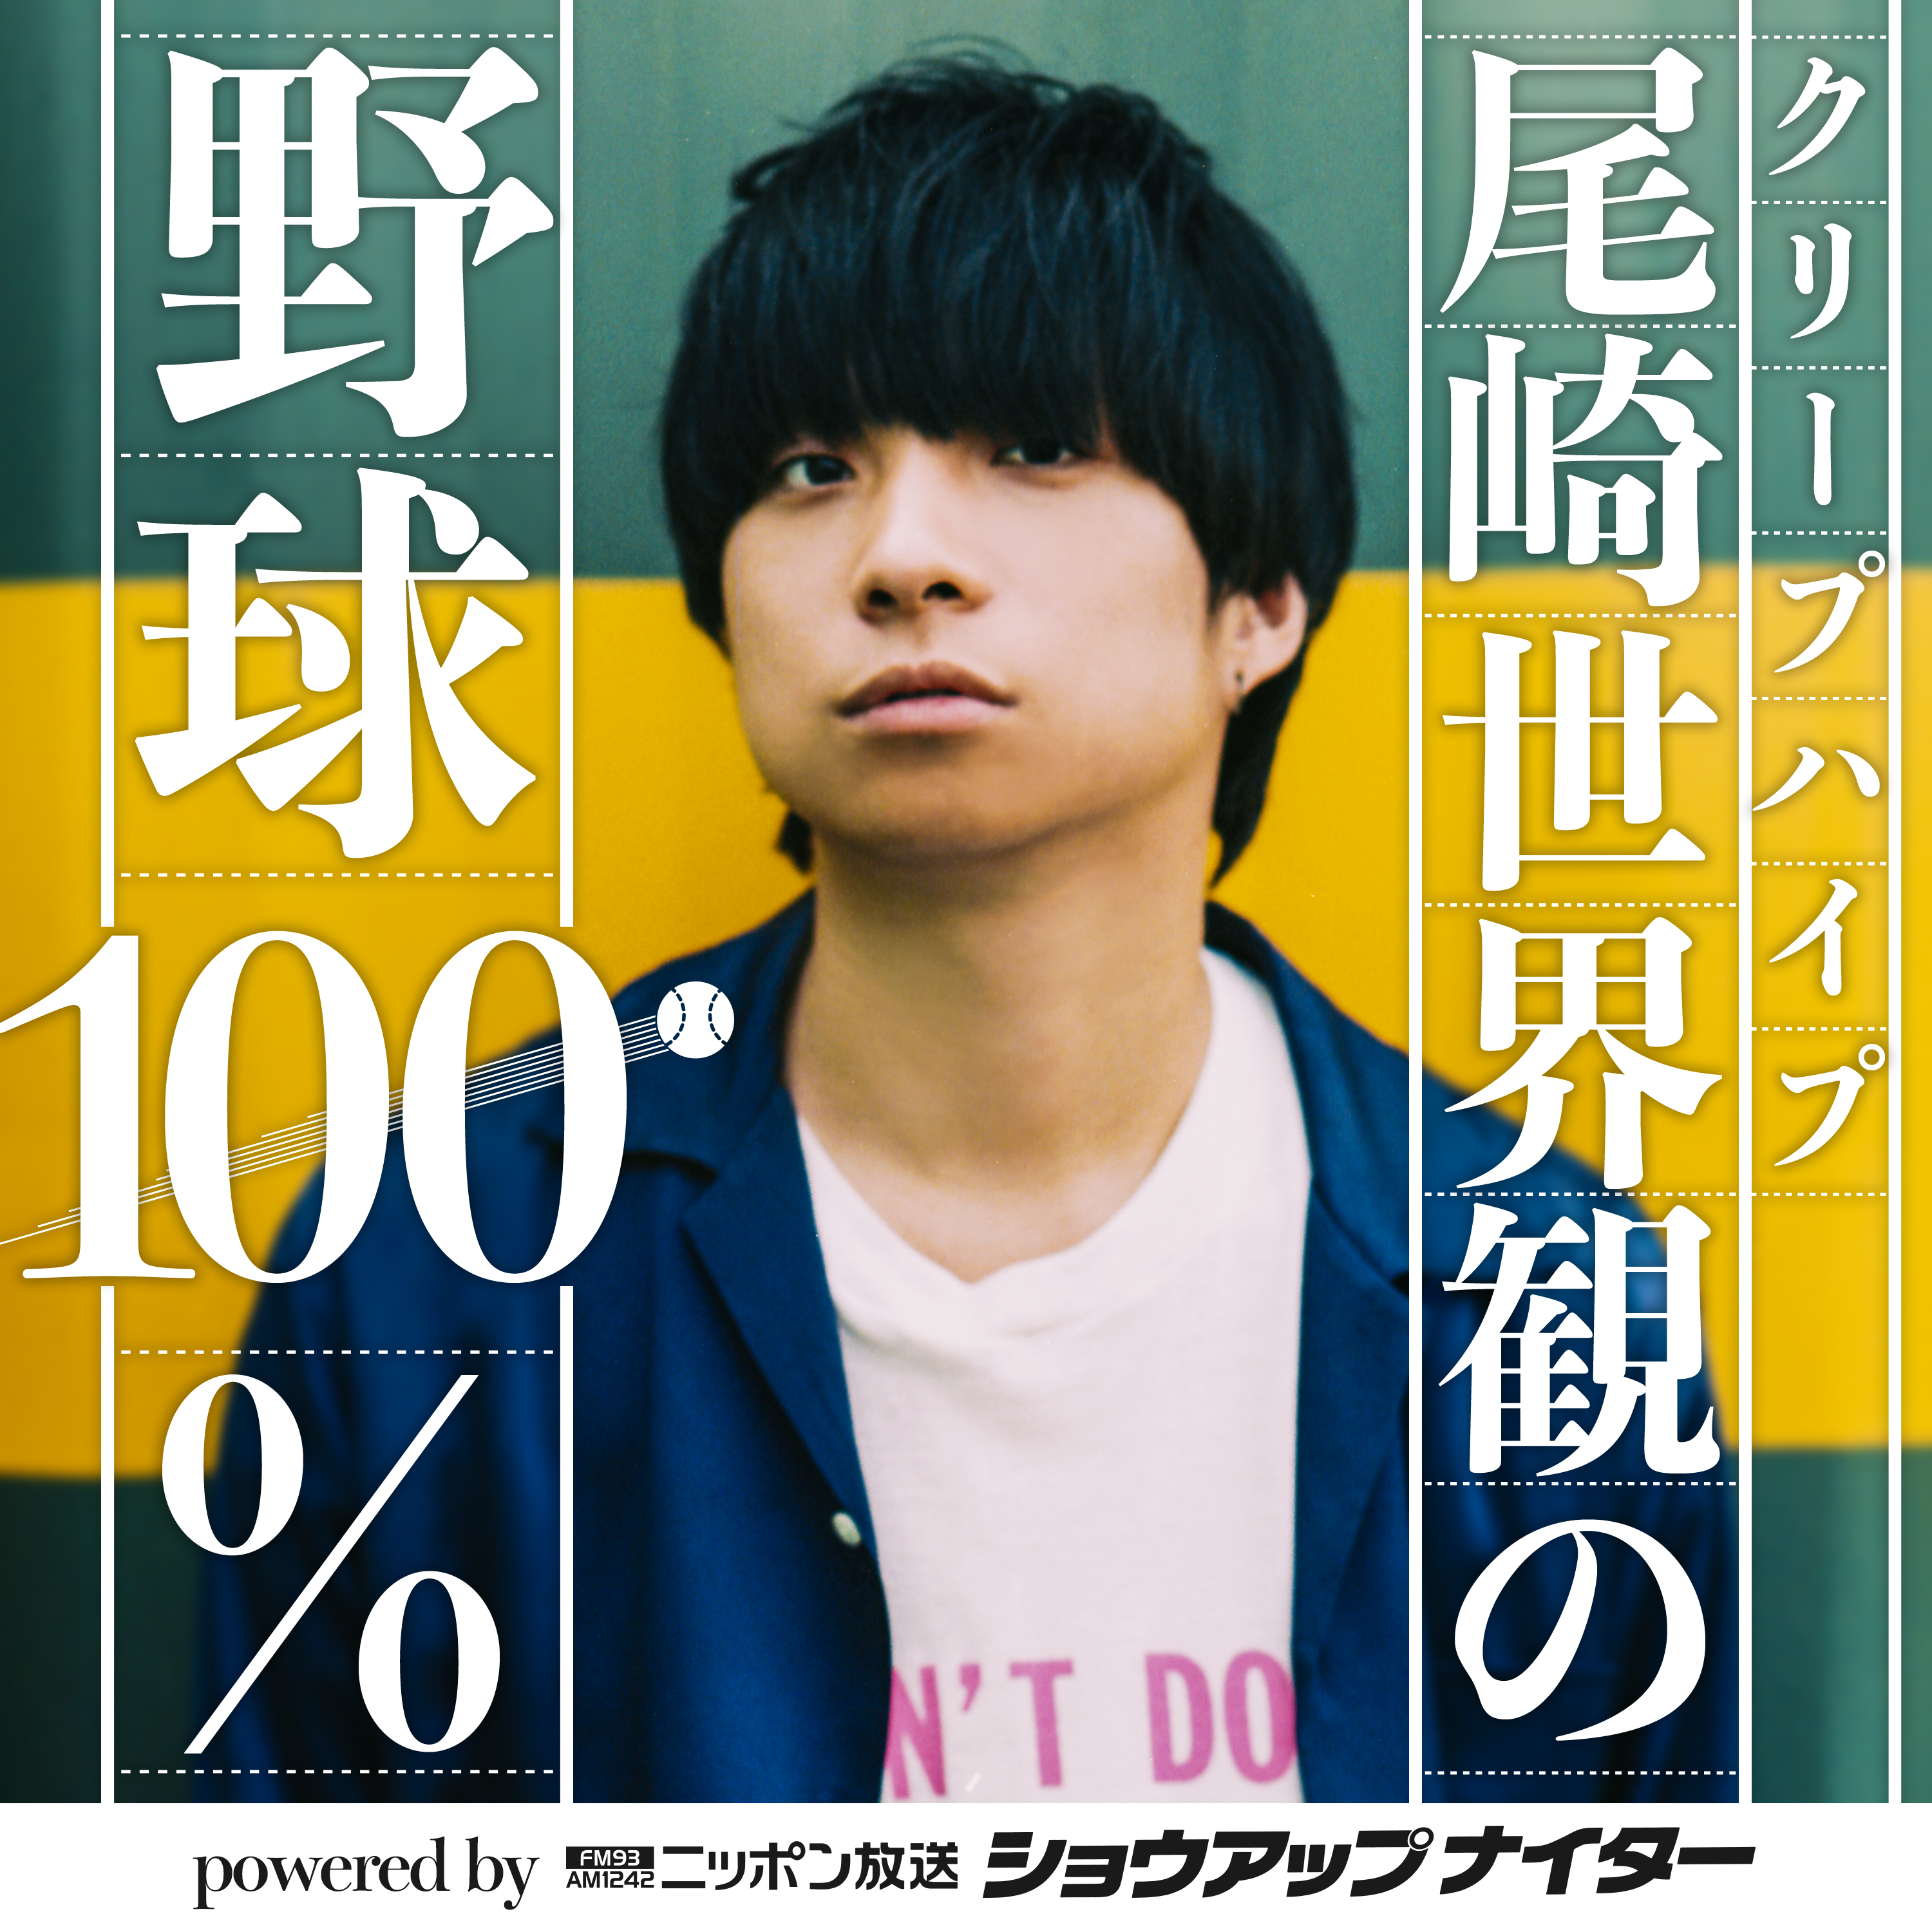 【第4回】クリープハイプ尾崎世界観の野球100% powered by ニッポン放送ショウアップナイター シーズン1